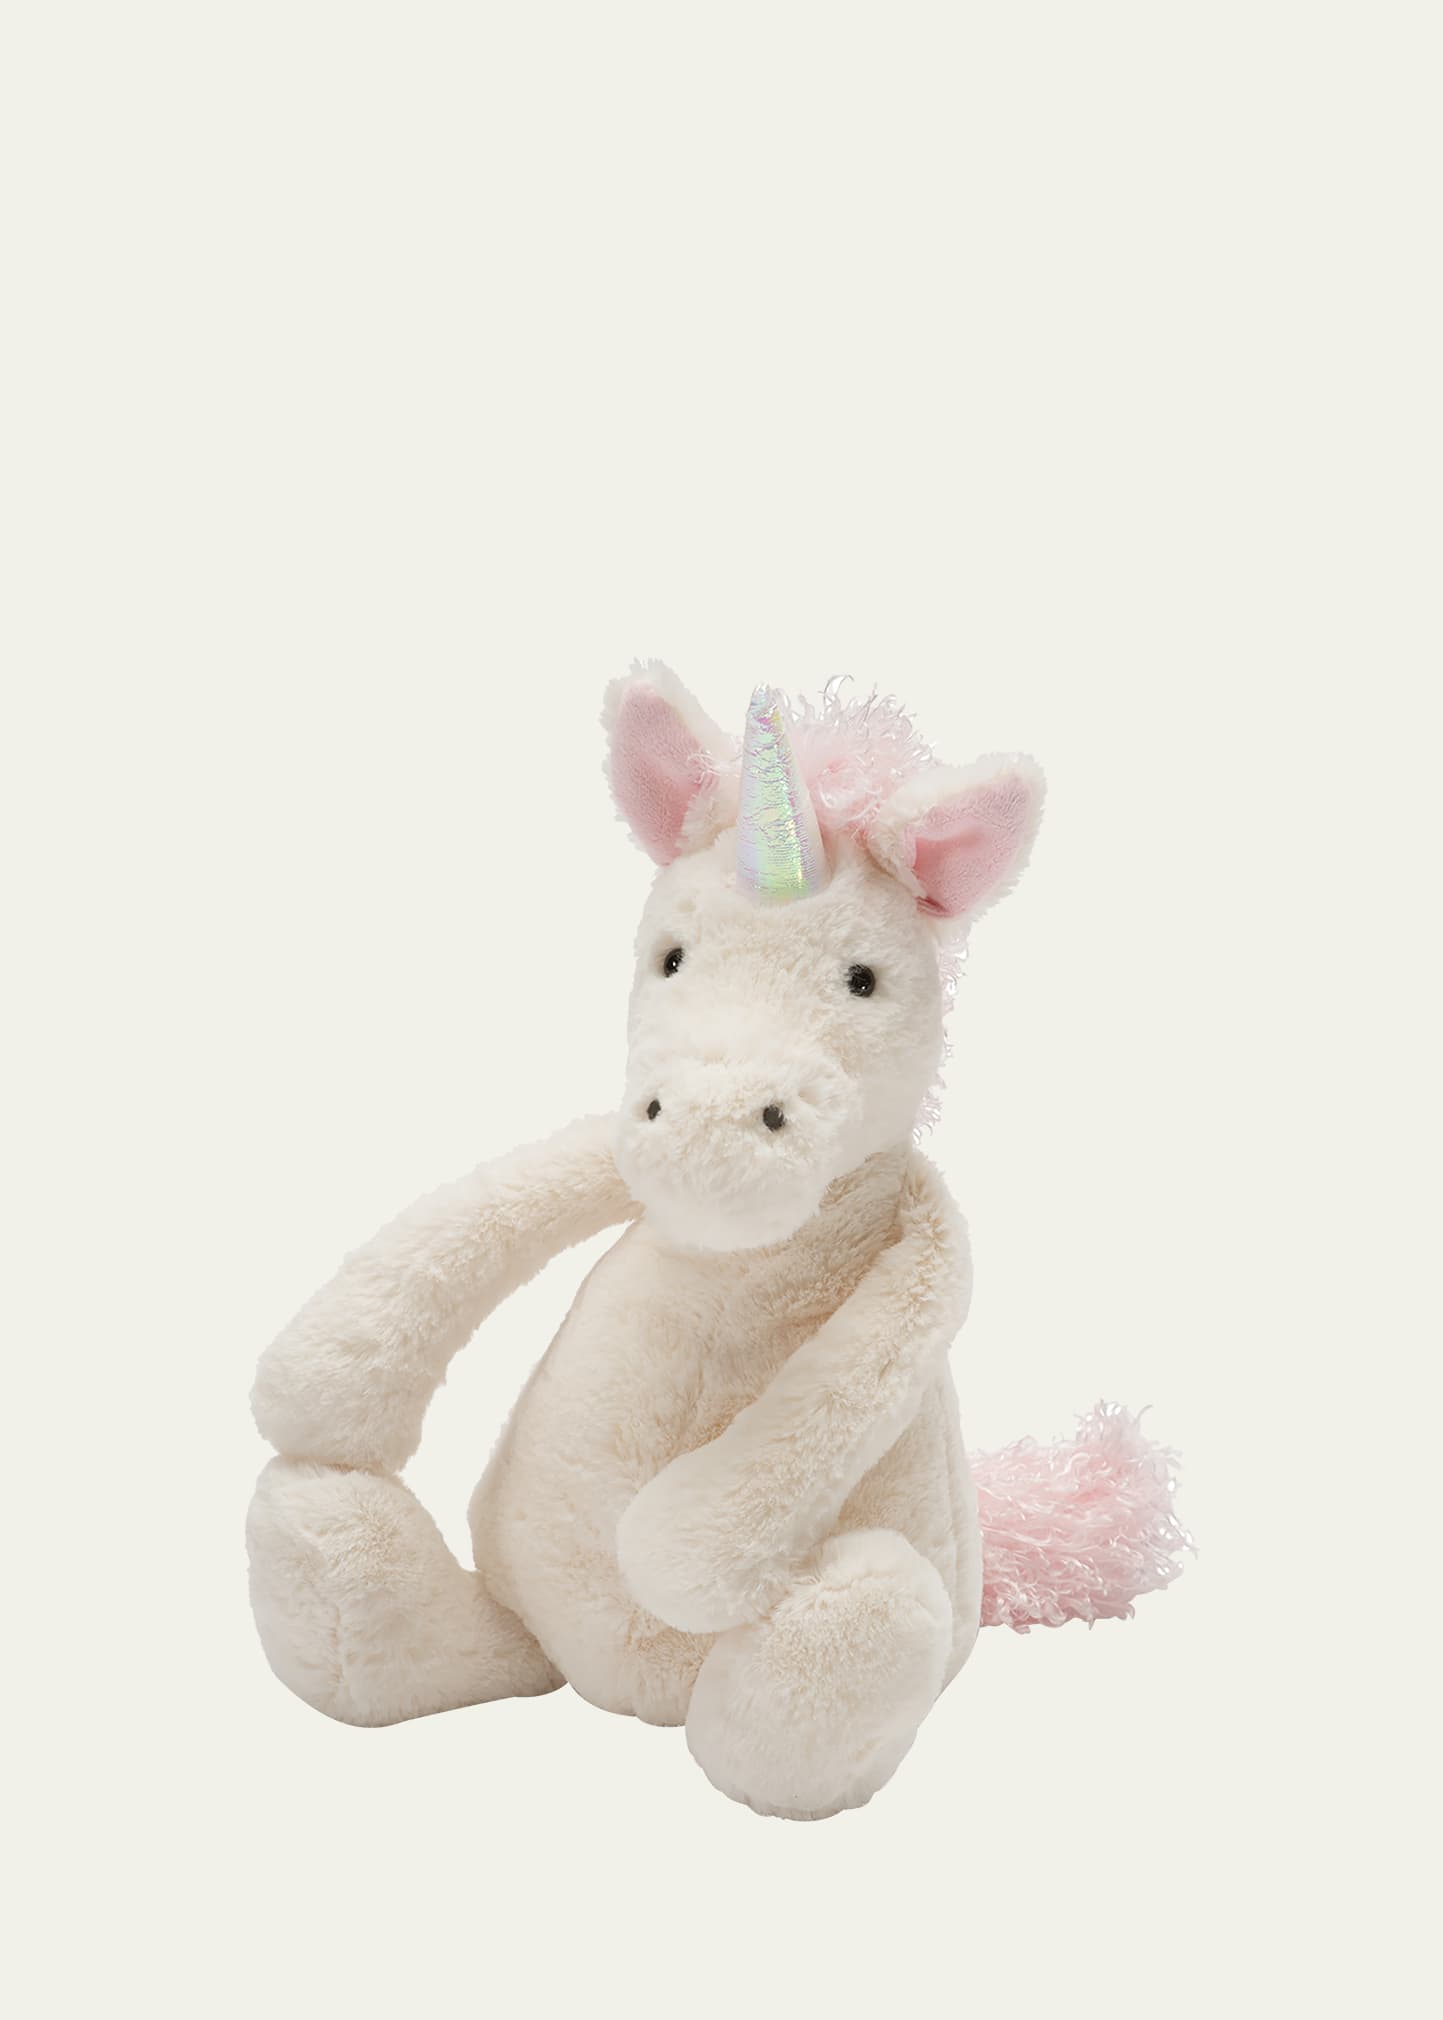 Bashful Unicorn Stuffed Animal